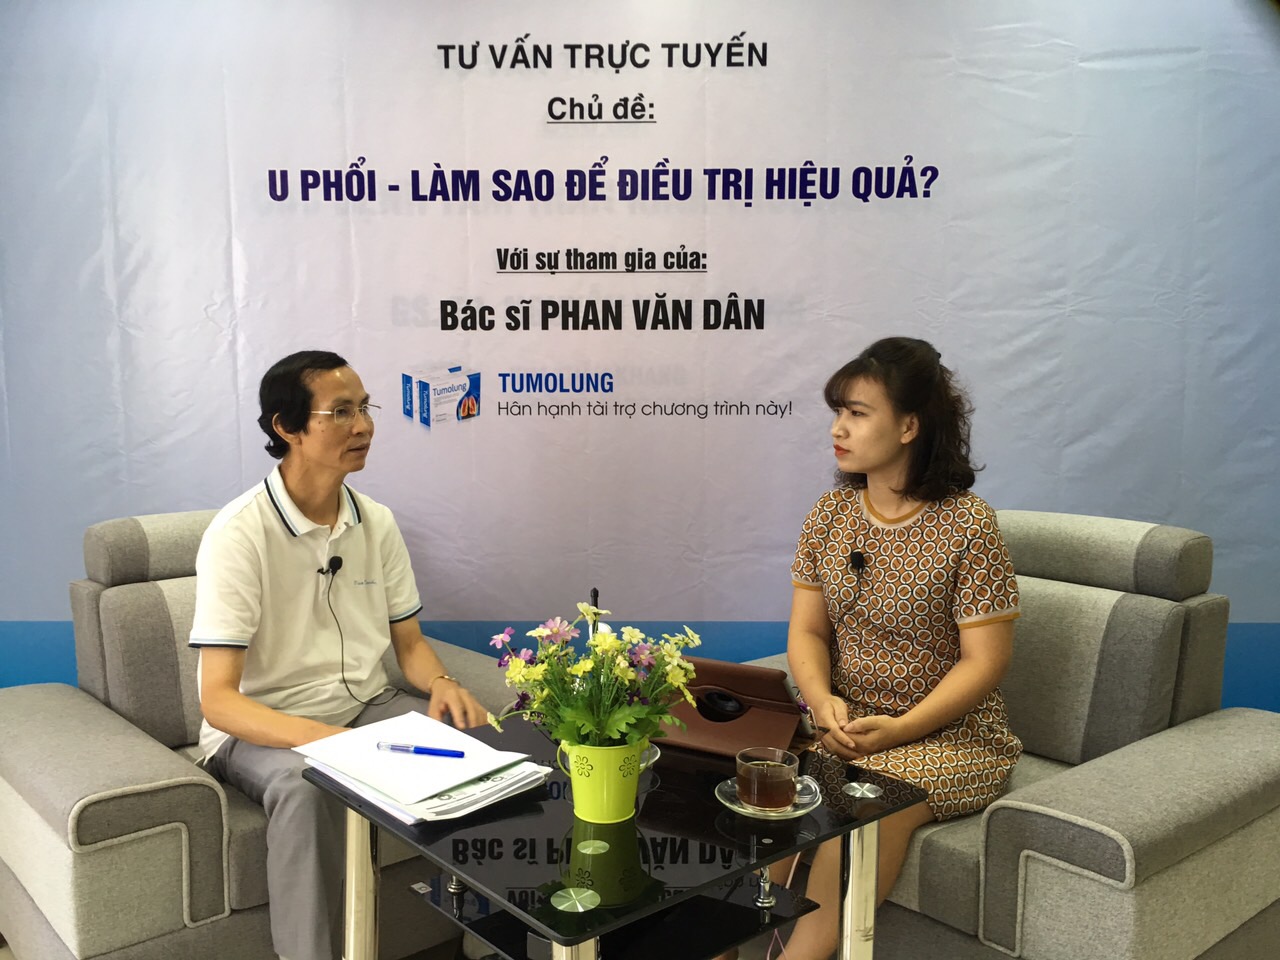 Giao lưu trực tuyến cùng chuyên gia Phan Văn Dân